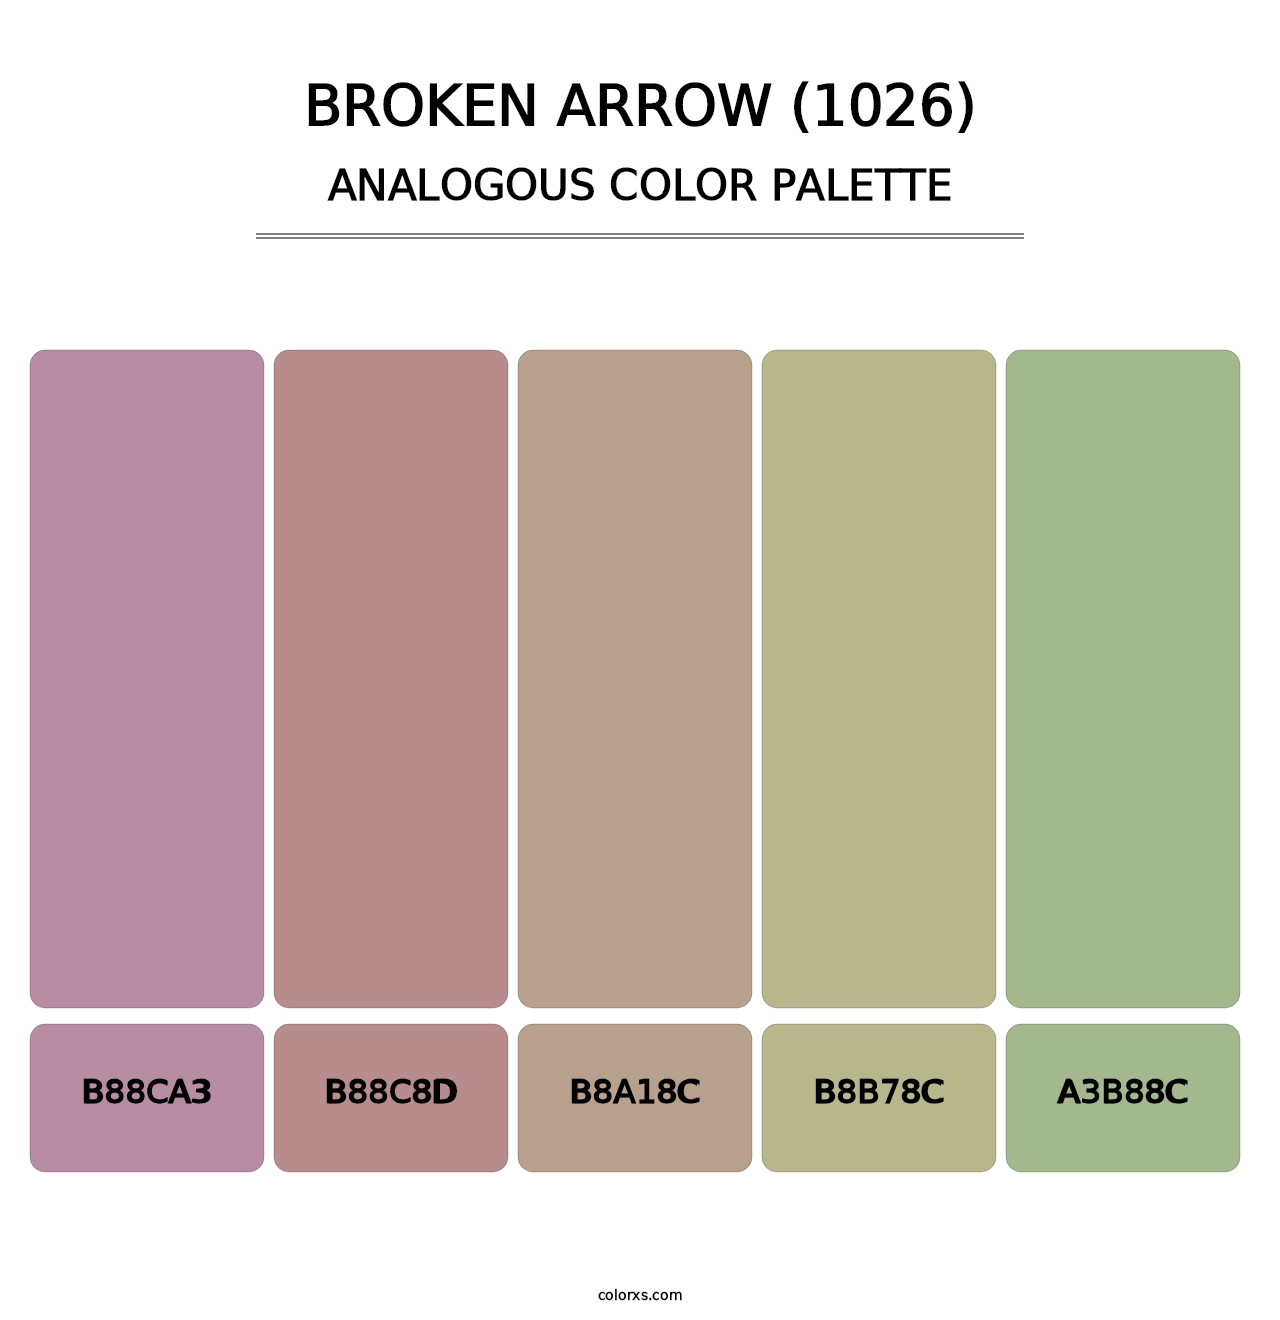 Broken Arrow (1026) - Analogous Color Palette